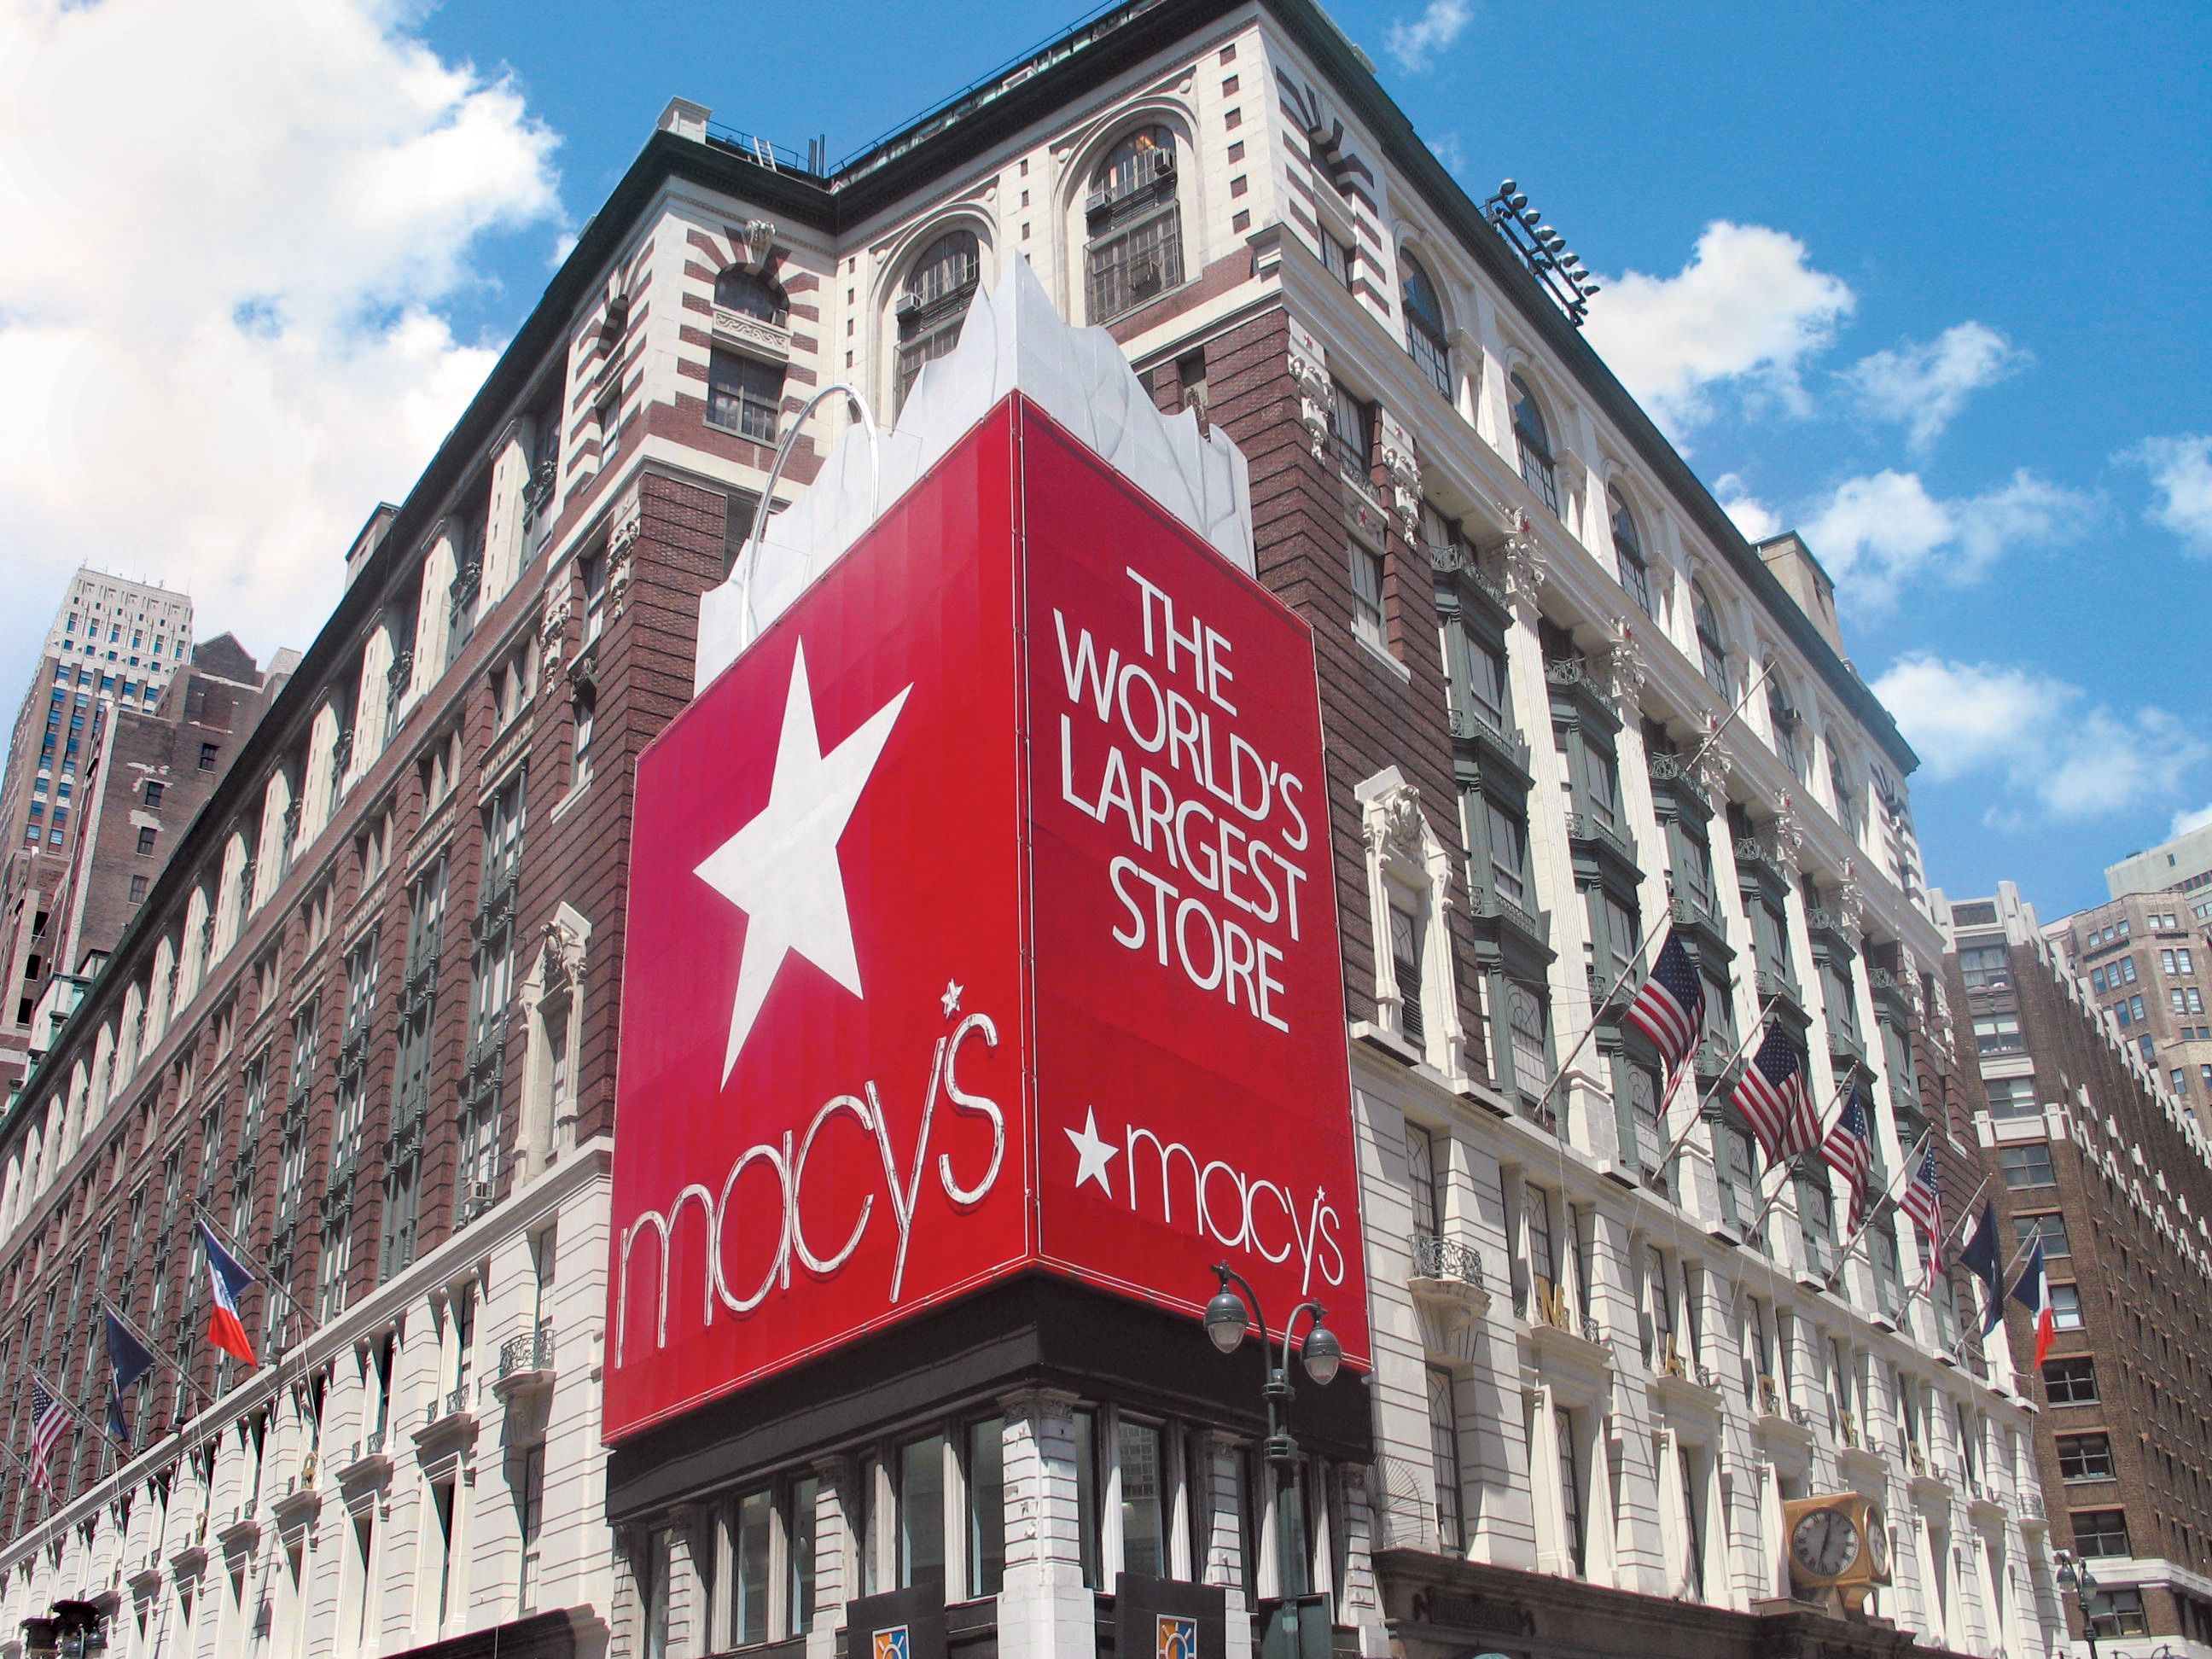 How Macy's Plans To Reclaim Luxury Leadership At Bloomingdale's